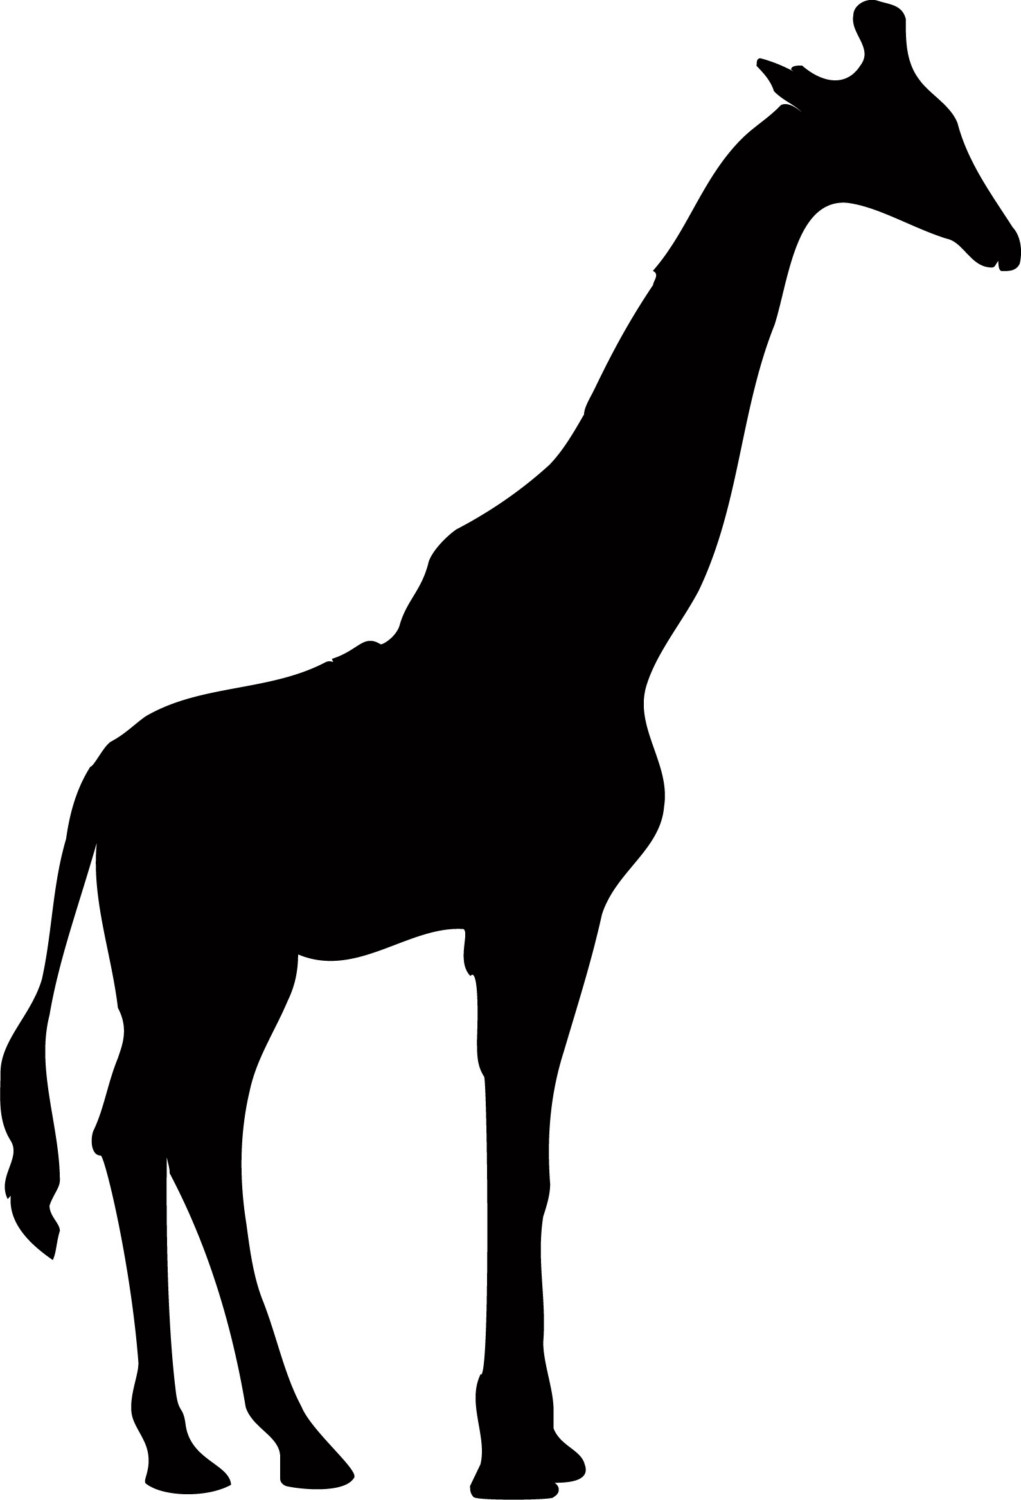 Giraffe Silhouette Isolated V